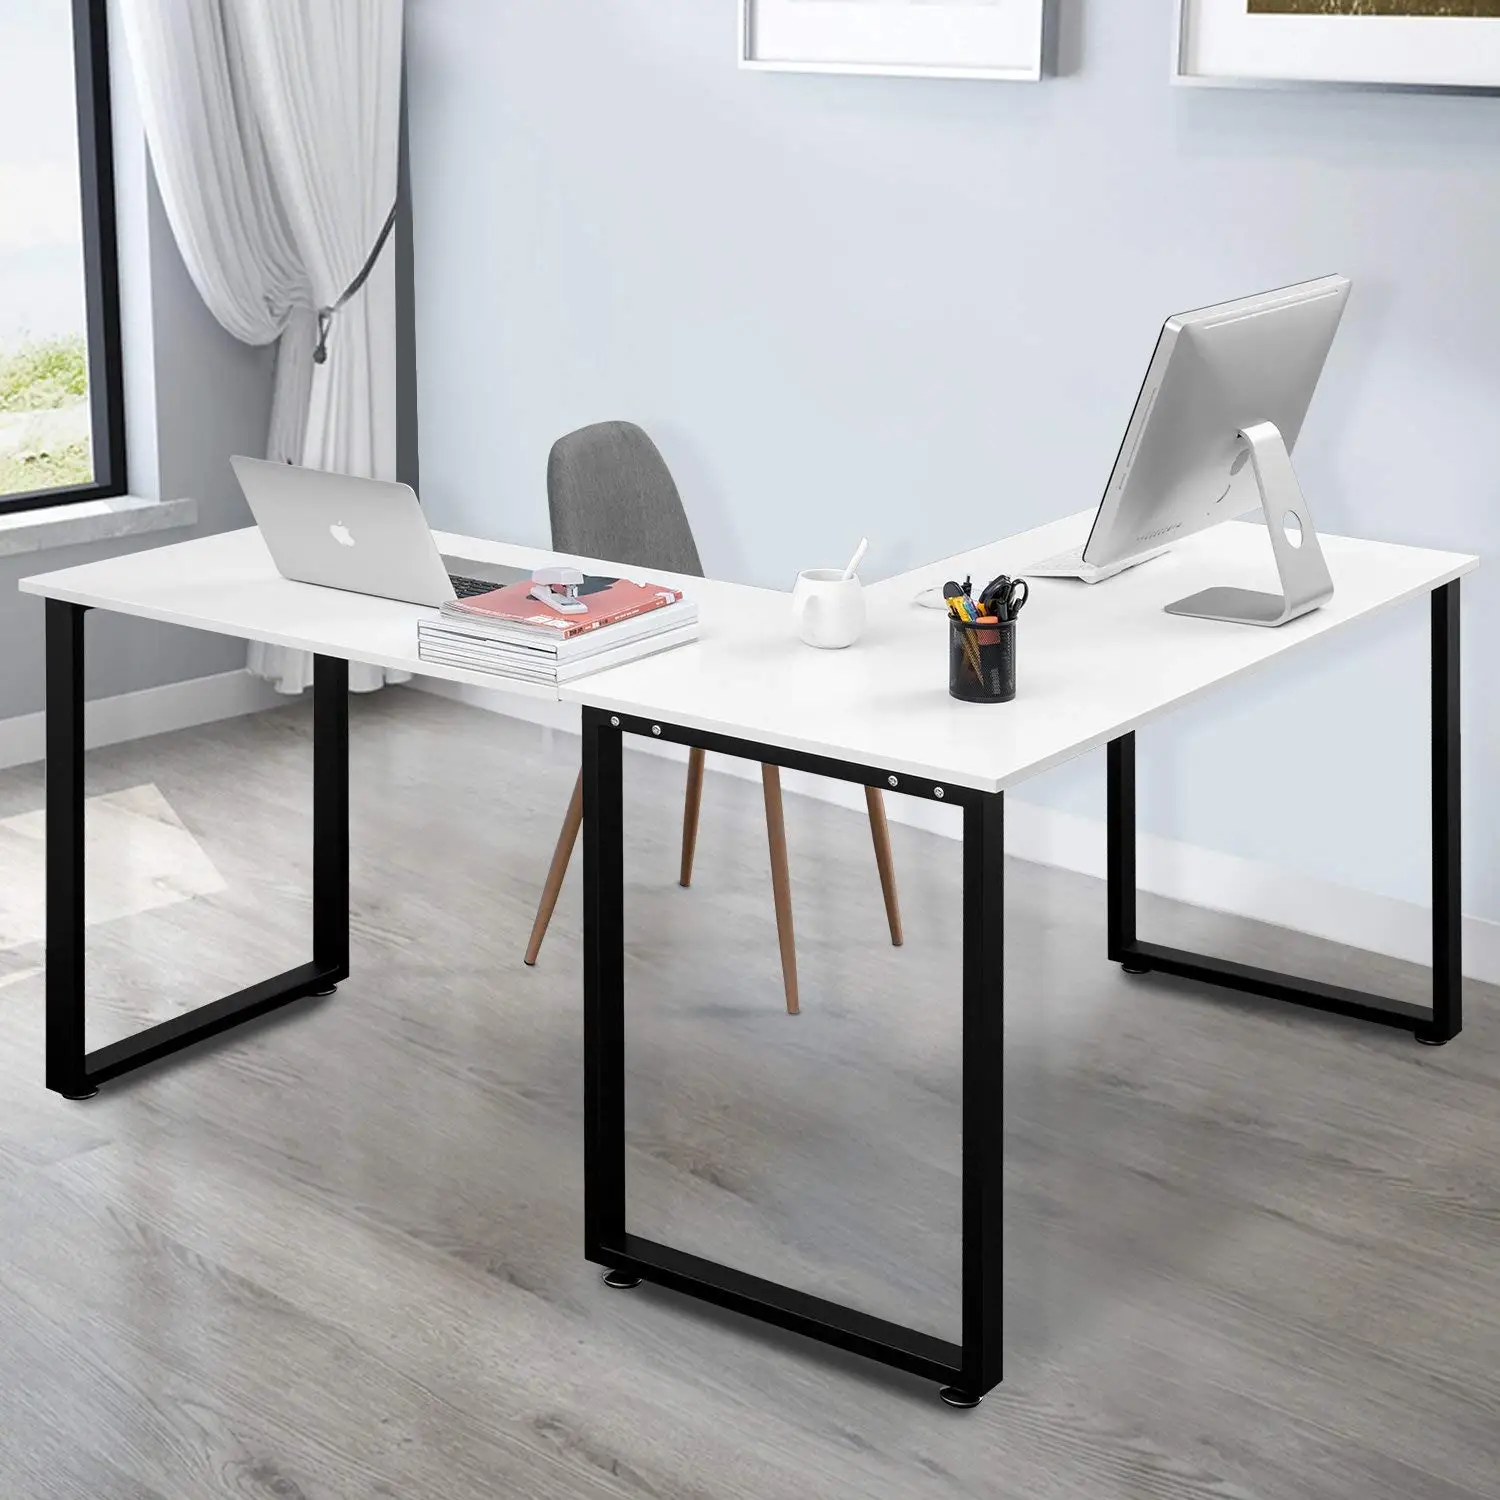 столы с металлическими ножками для офиса